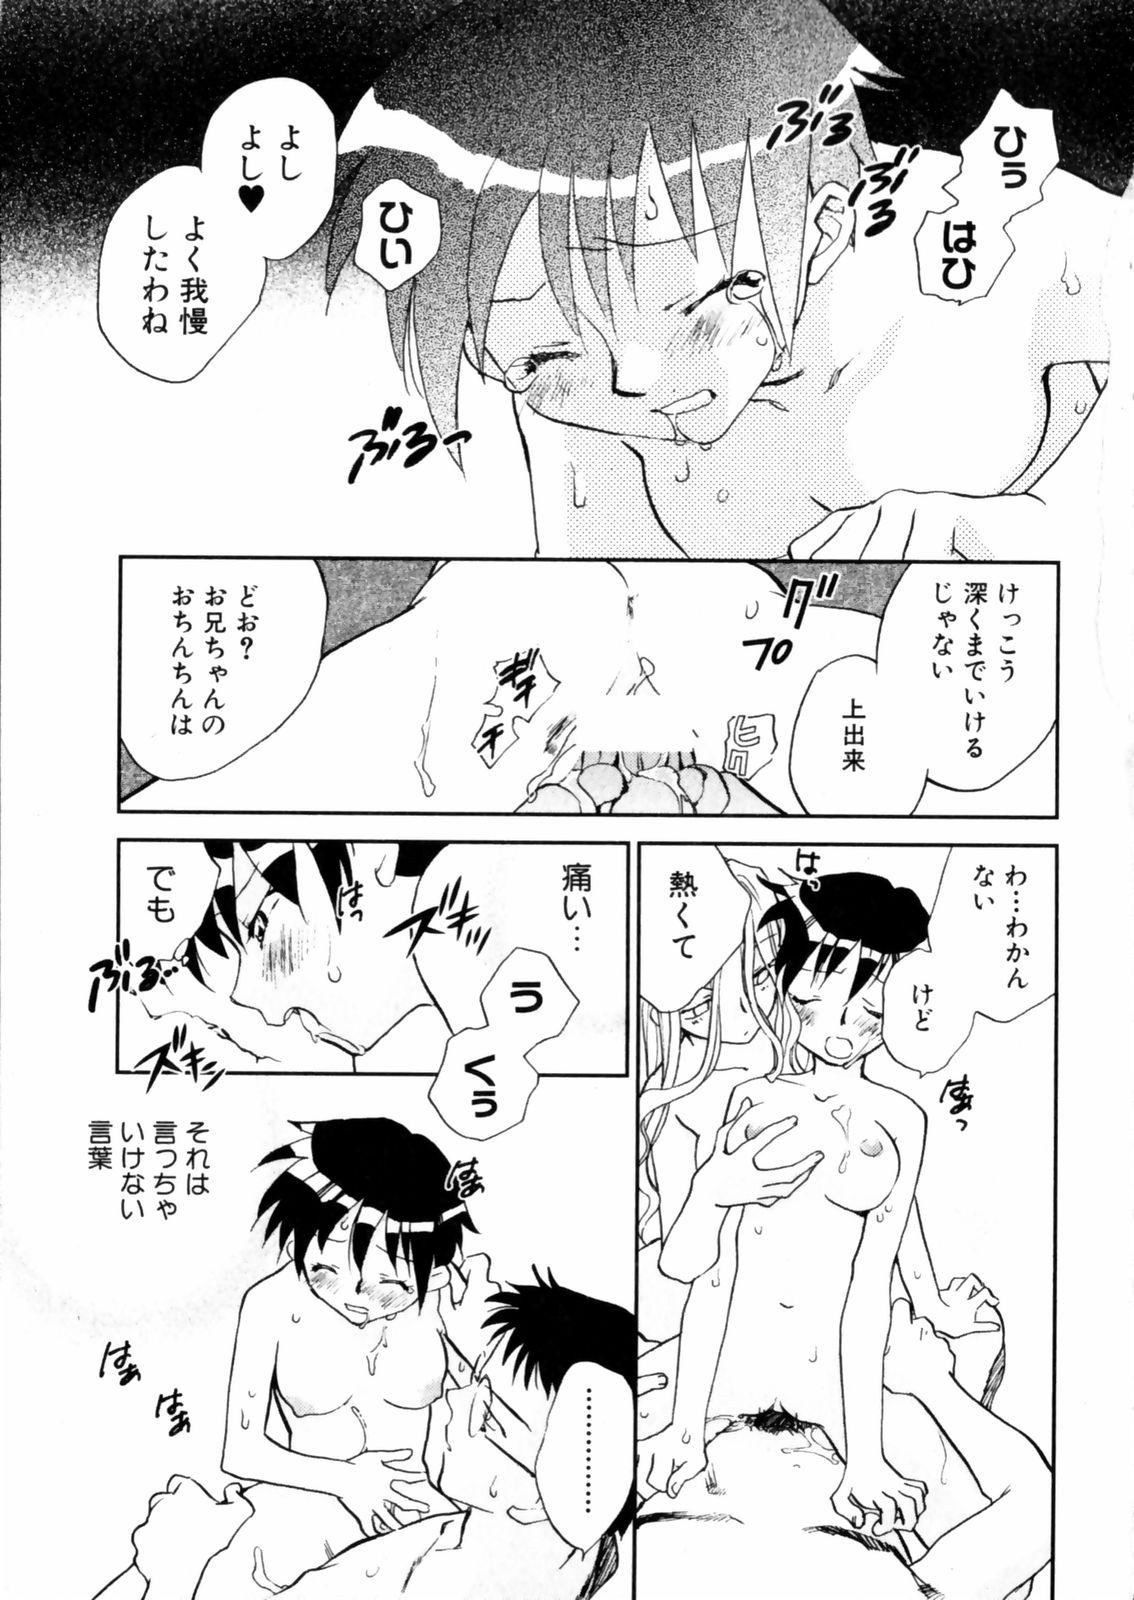 [Okano Ahiru] Hanasake ! Otome Juku (Otome Private Tutoring School) Vol.2 154